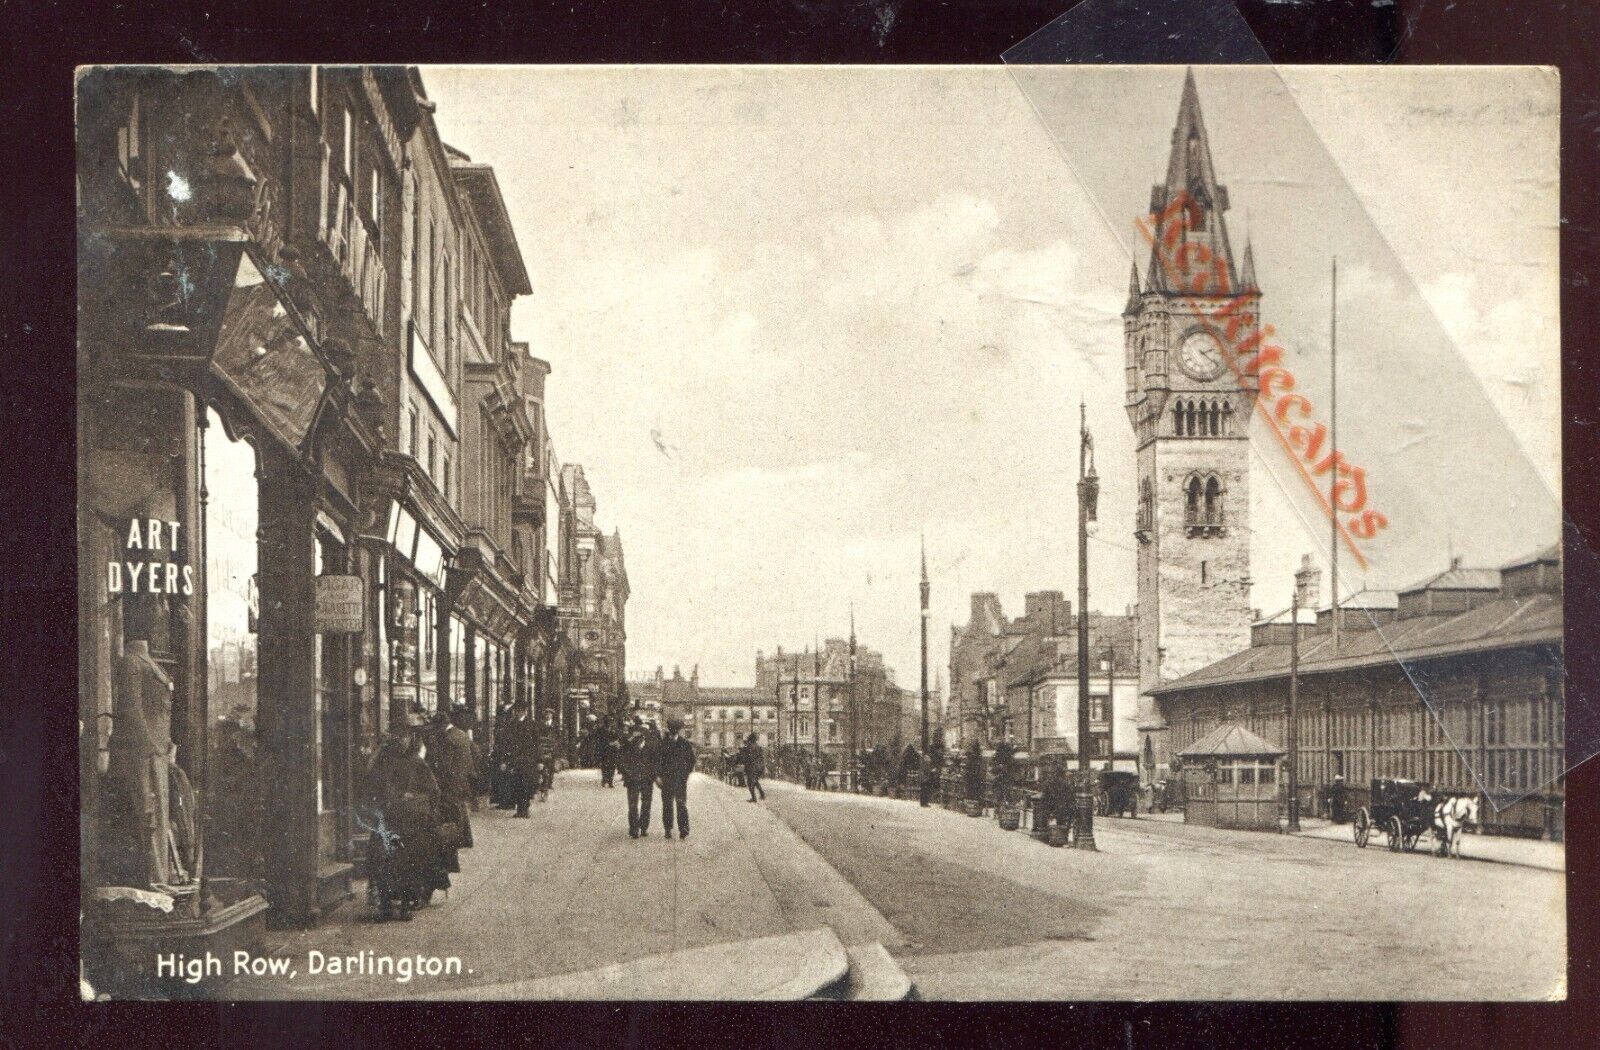 House Clearance - Darlington High Row (P/M 1916)